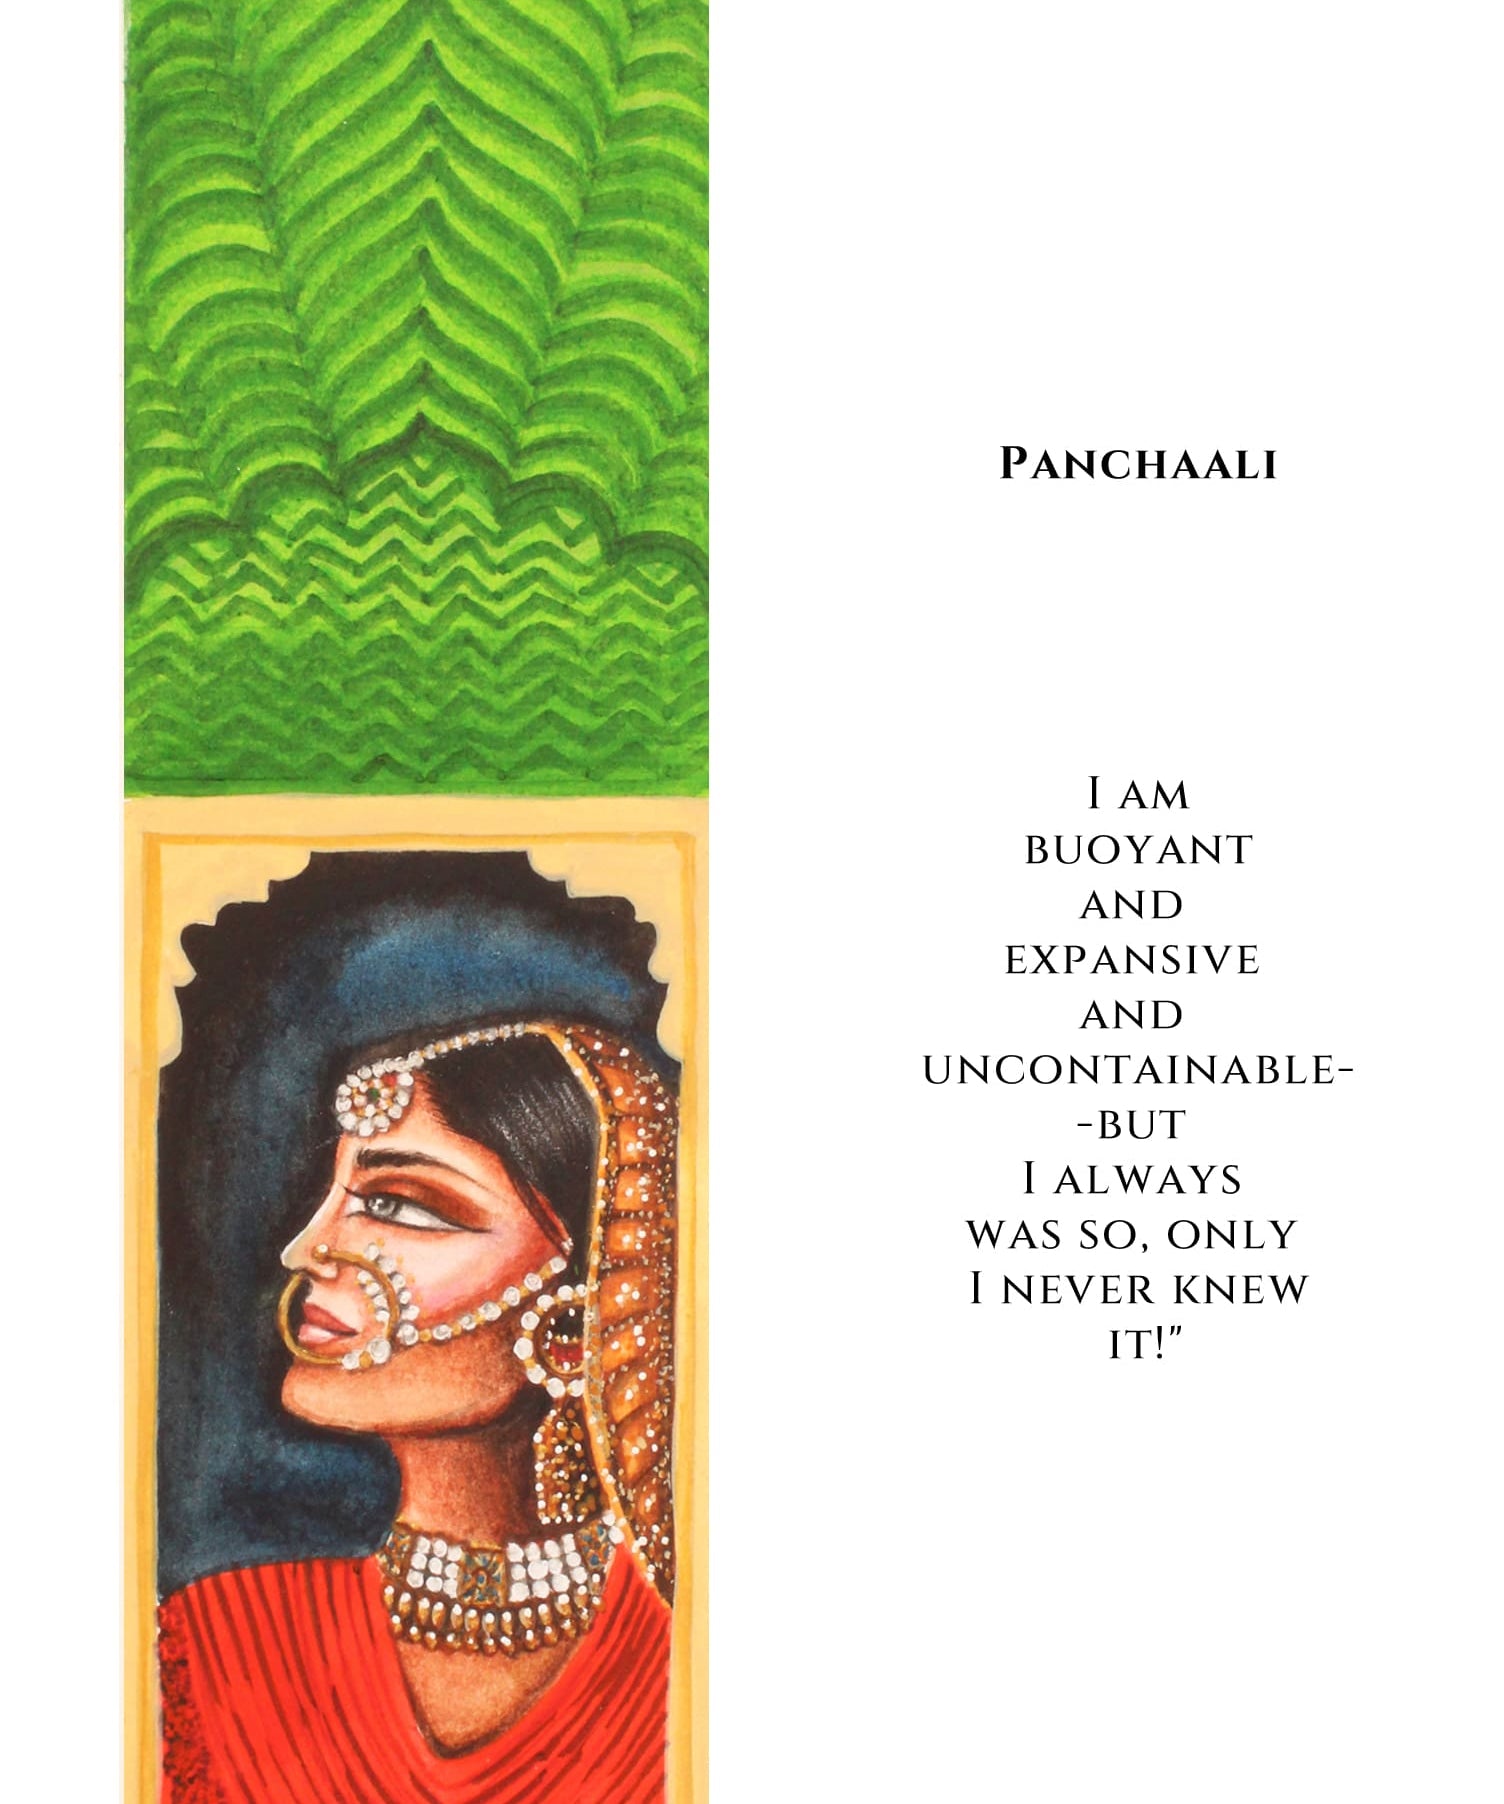 Urvashi Bookmarks